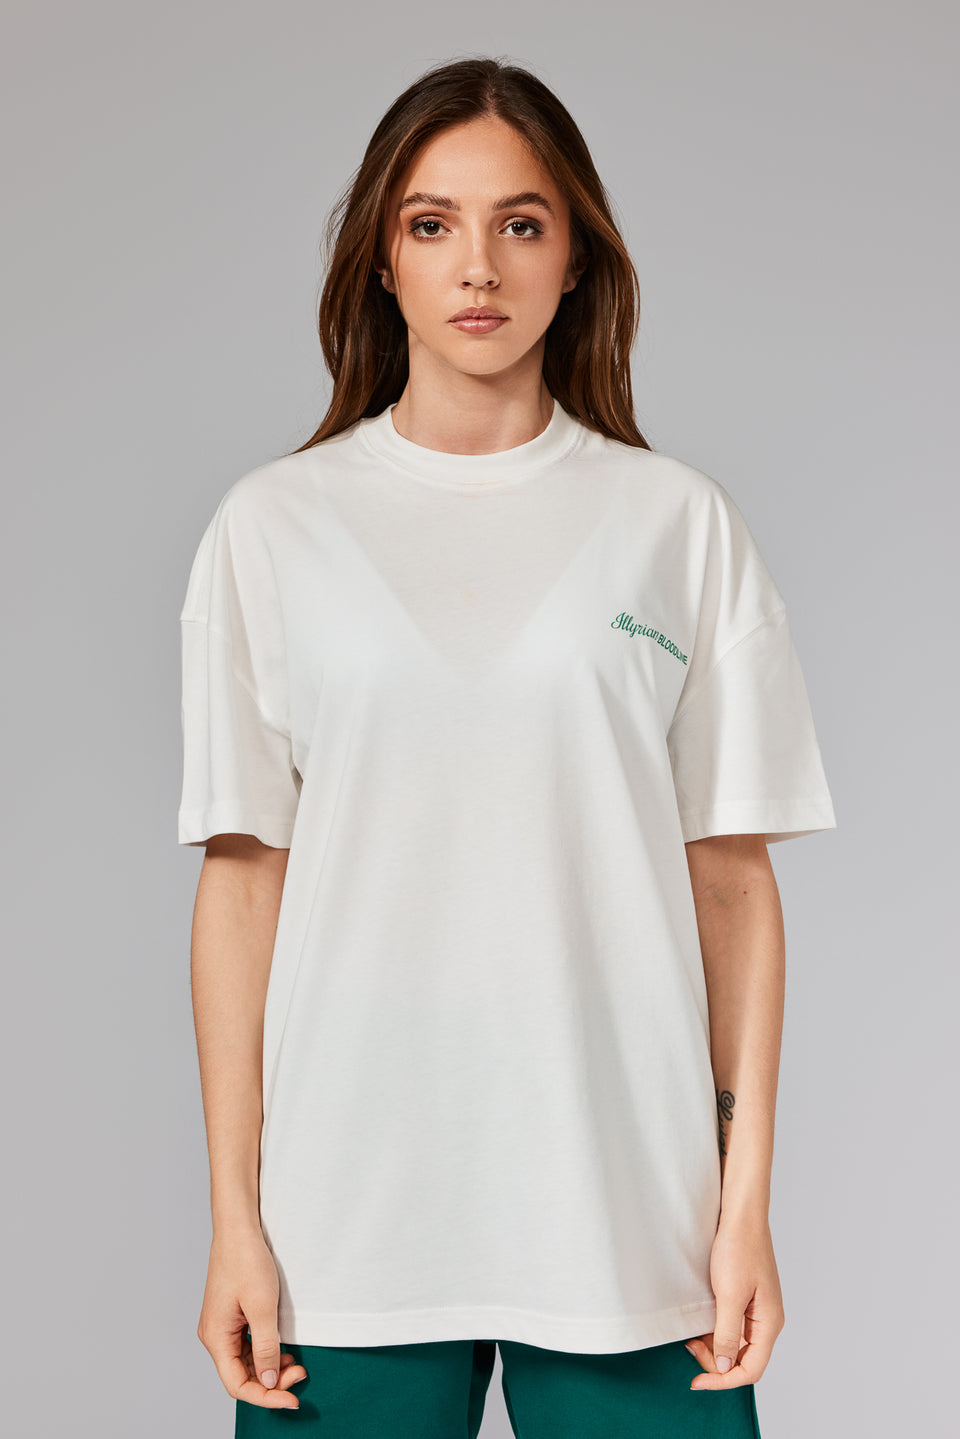 Illyrian Fig T-Shirt